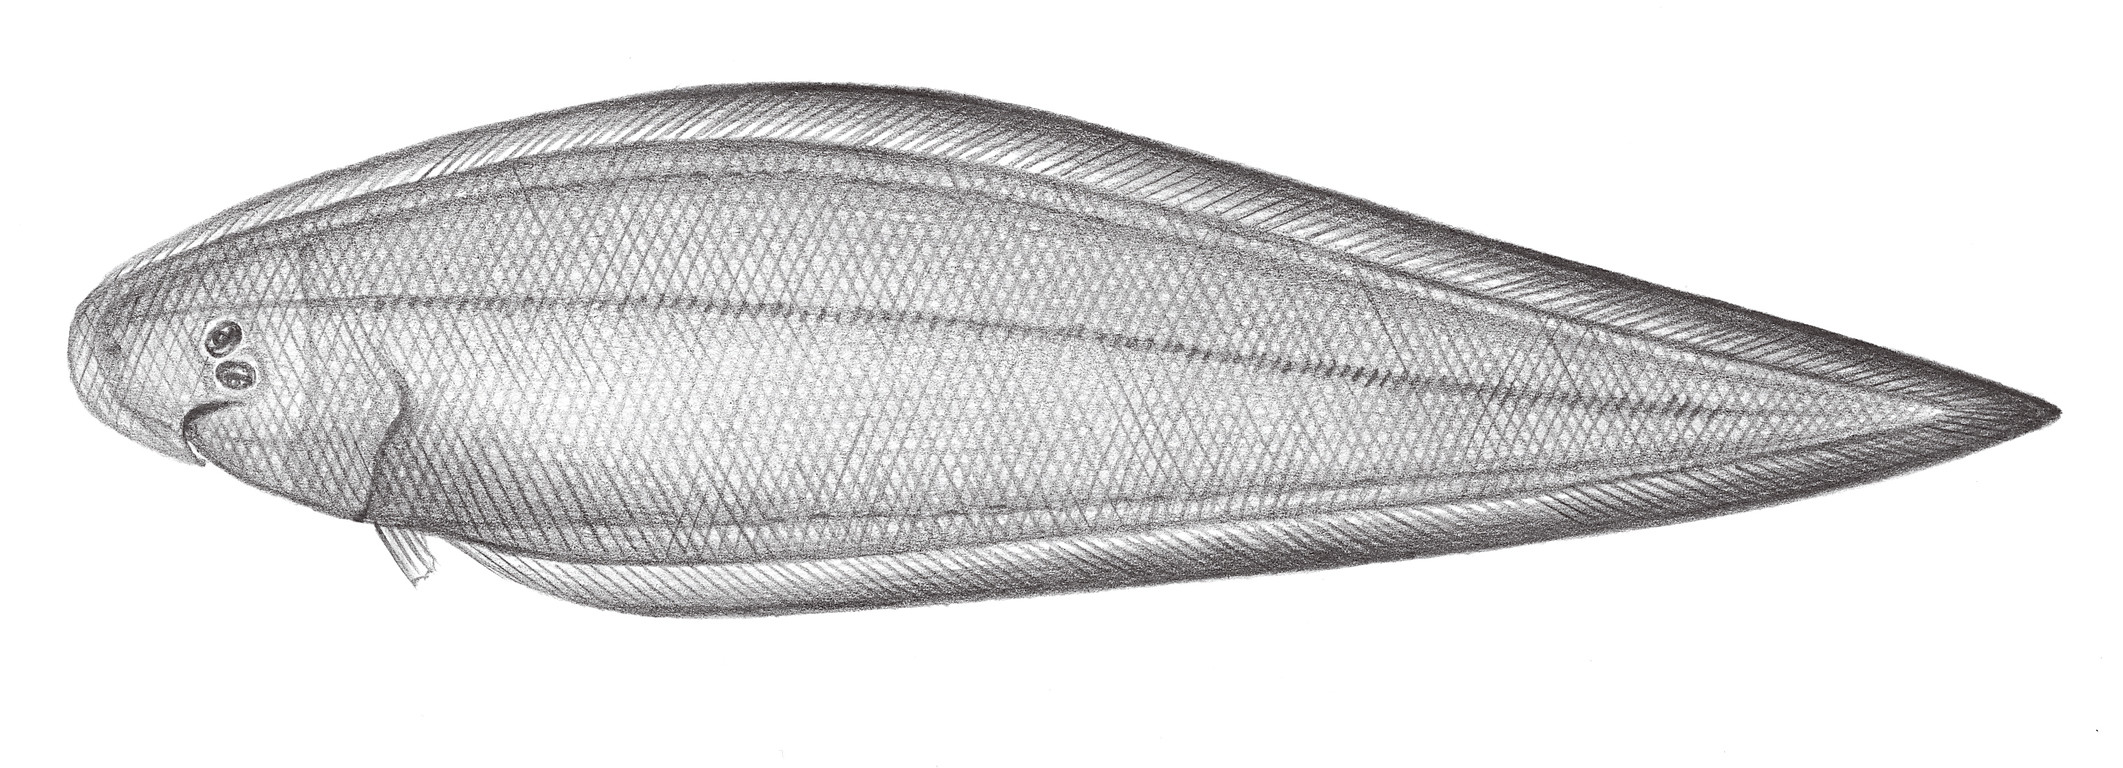 2464.	書顏舌鰨 Cynoglossus suyeni Fowler, 1934